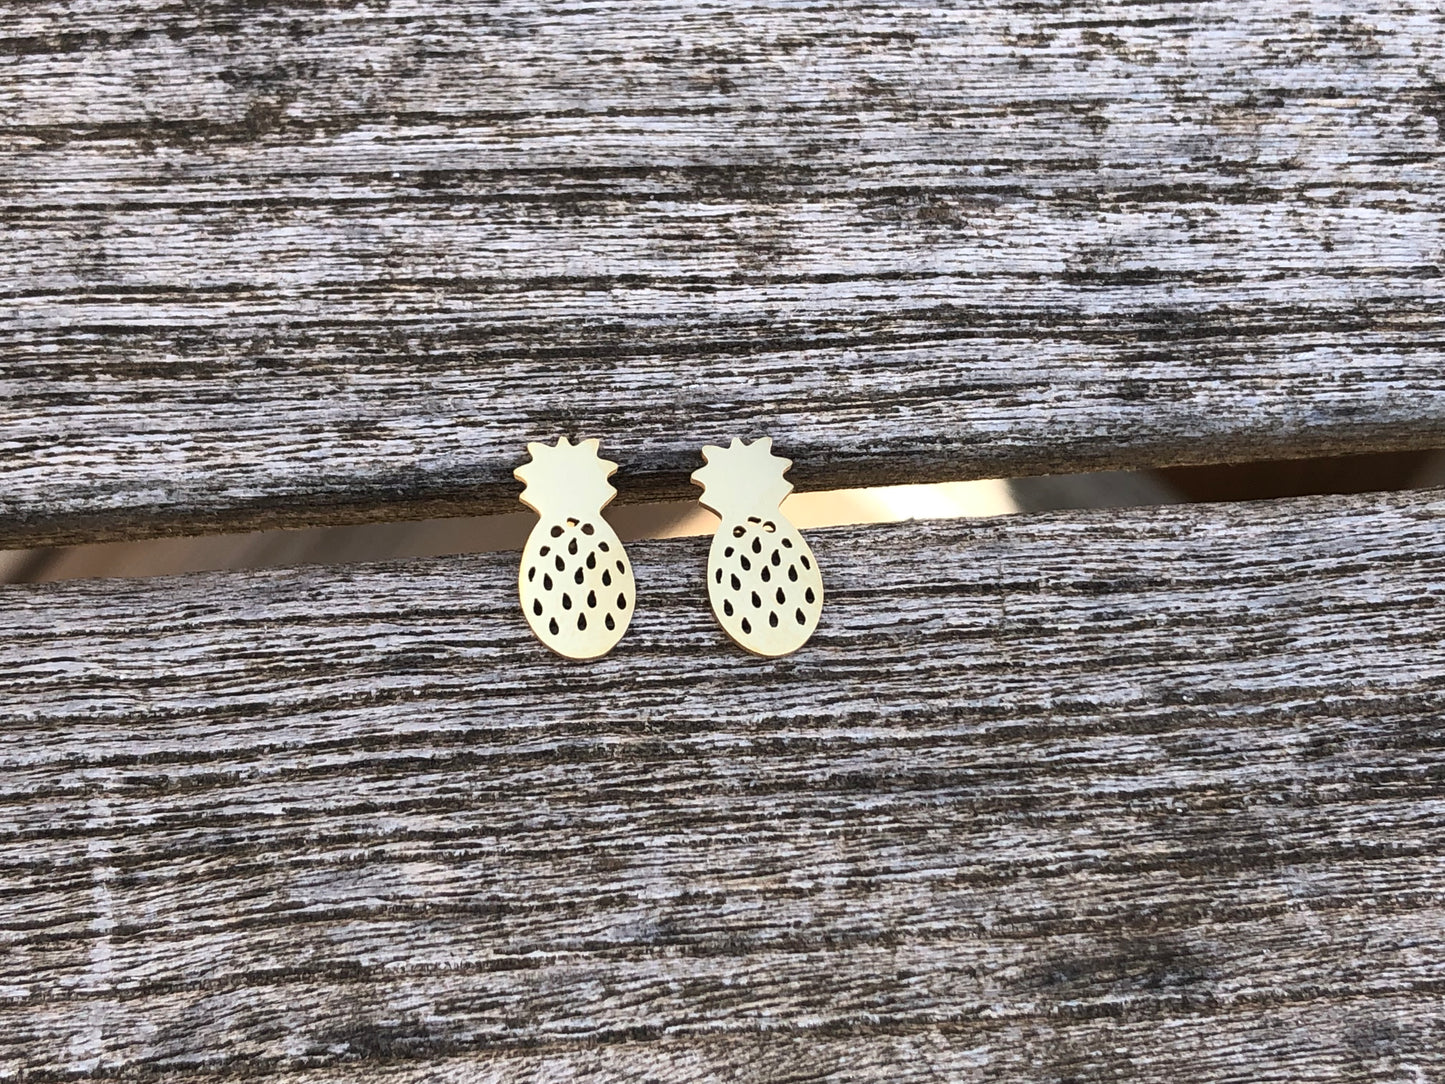 Hybrid stainless steel earrings, pineapple gold